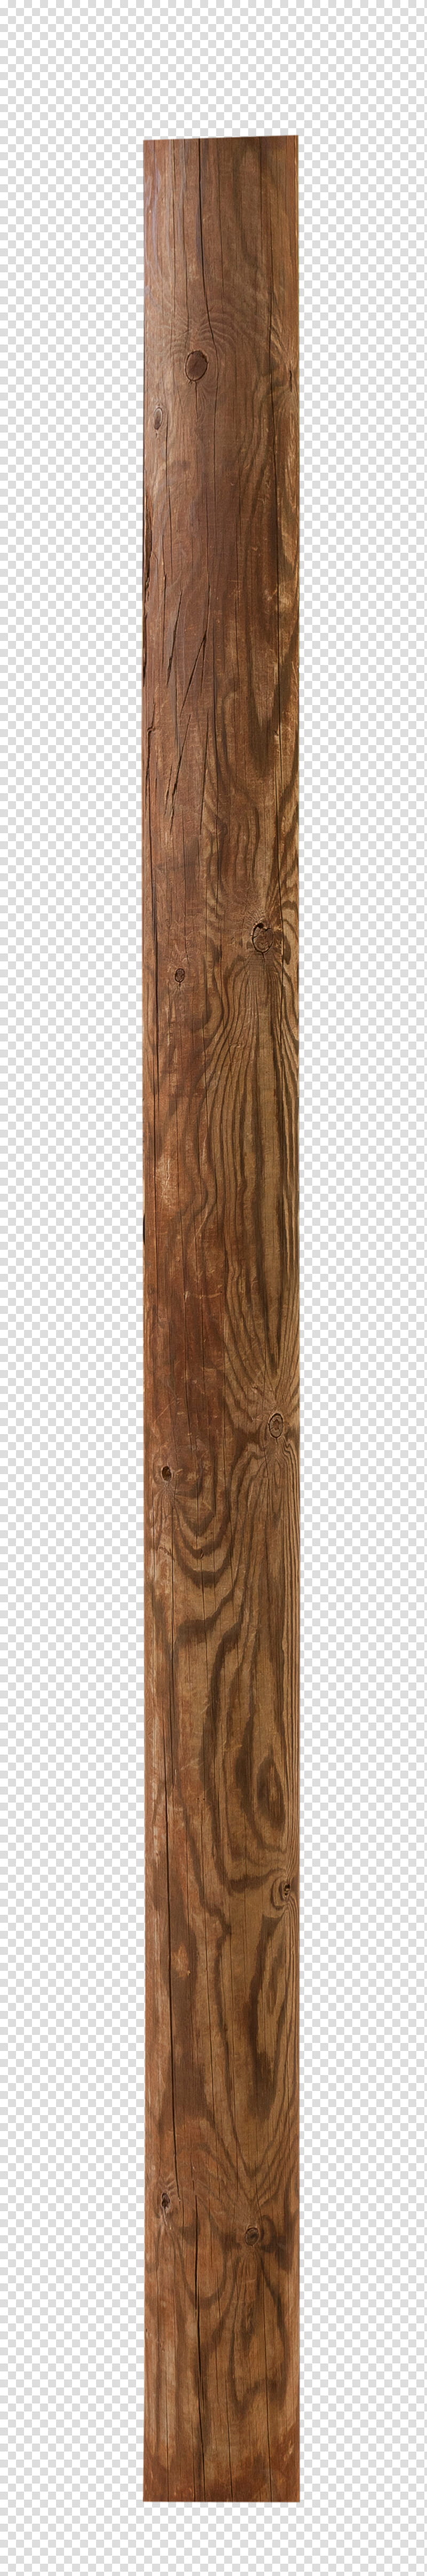 stick clipart wooden stick